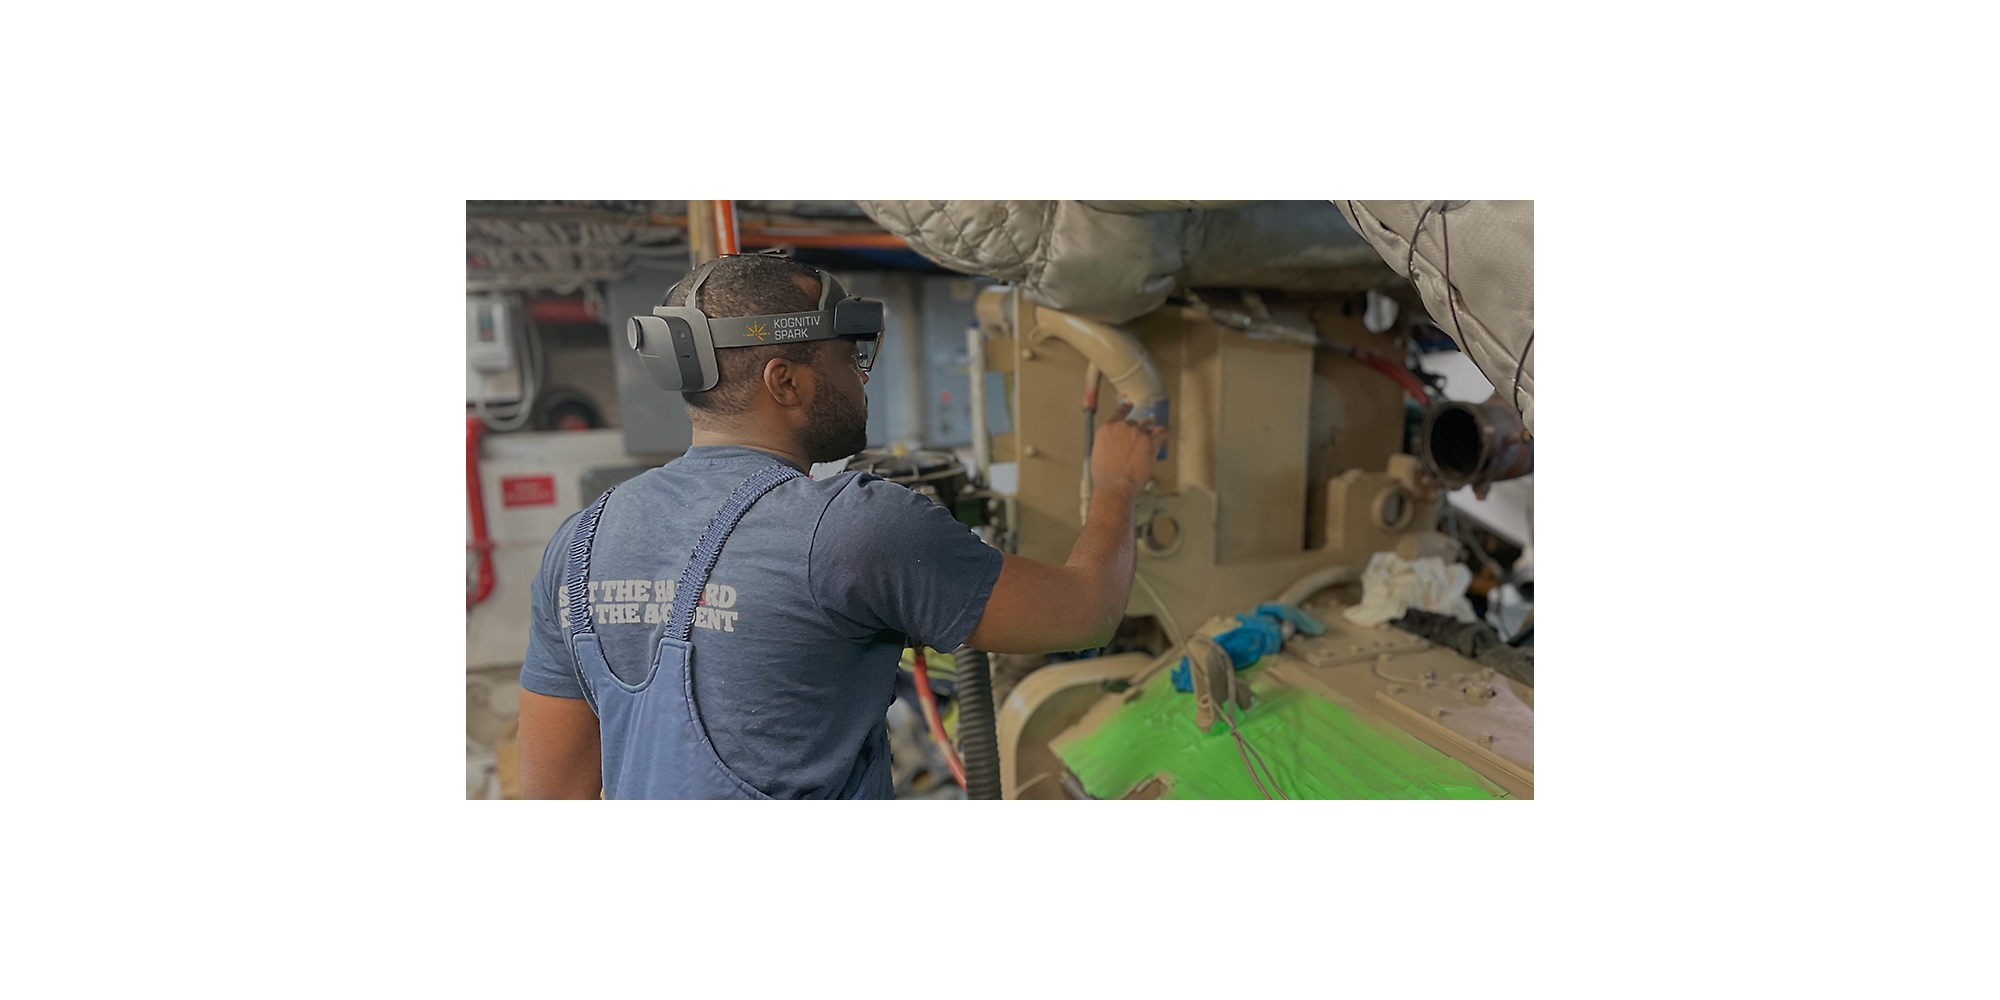 Una persona con HoloLens 2 trabajando en una pieza de maquinaria.